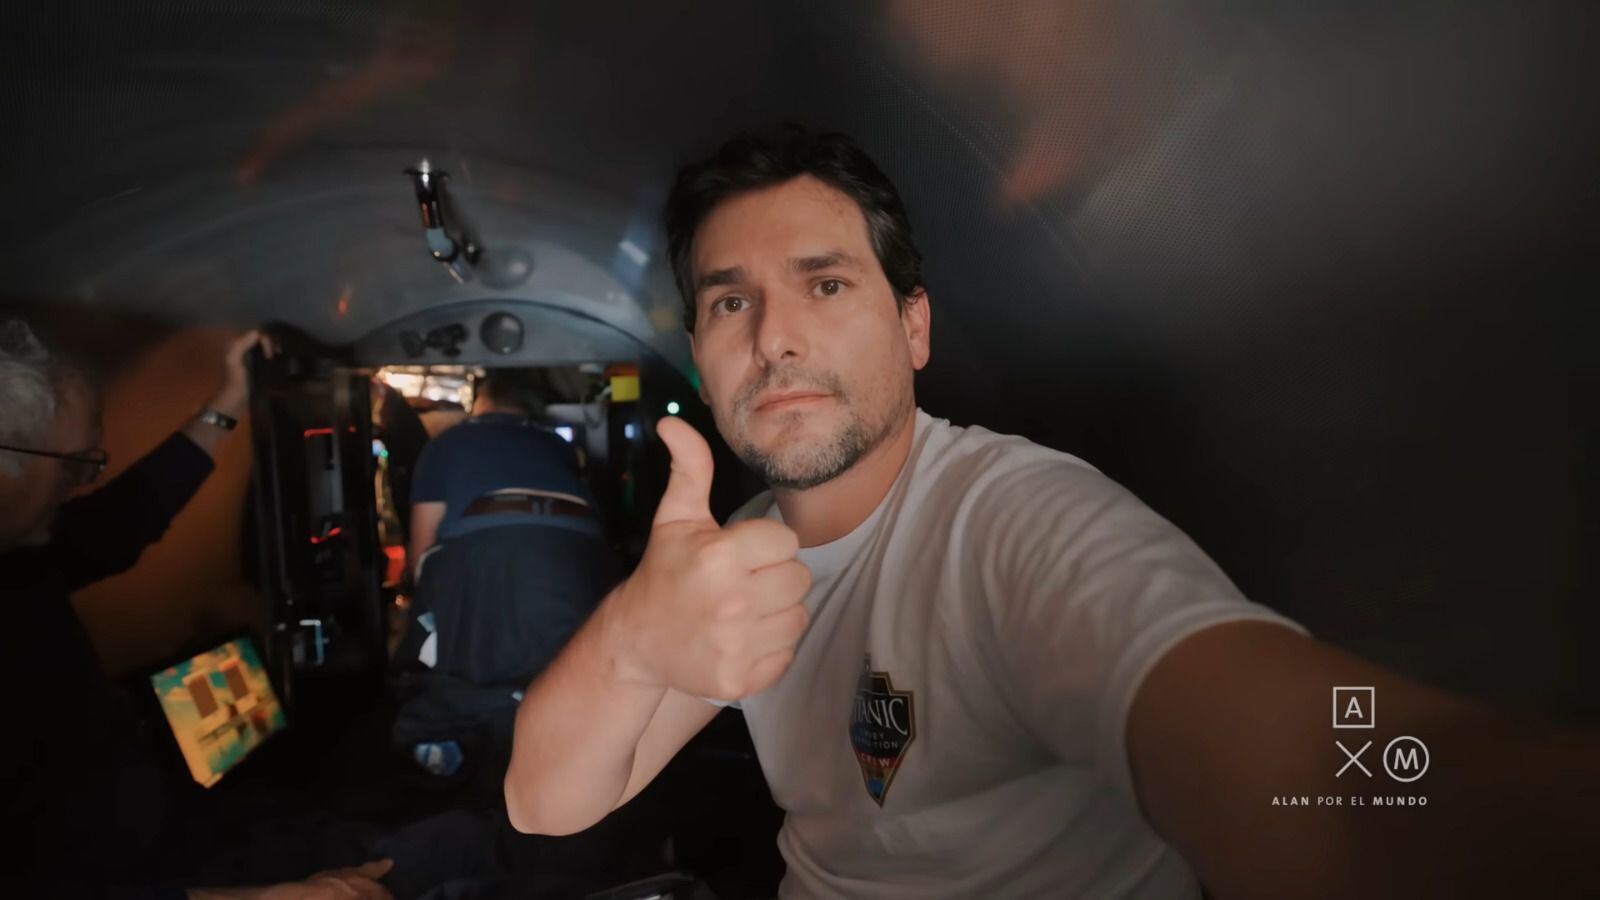 Alan Estrada estuvo de acuerdo en tomar los riesgos que implicaba viajar en el submarino. (Foto: YouTube / alanxelmundo)